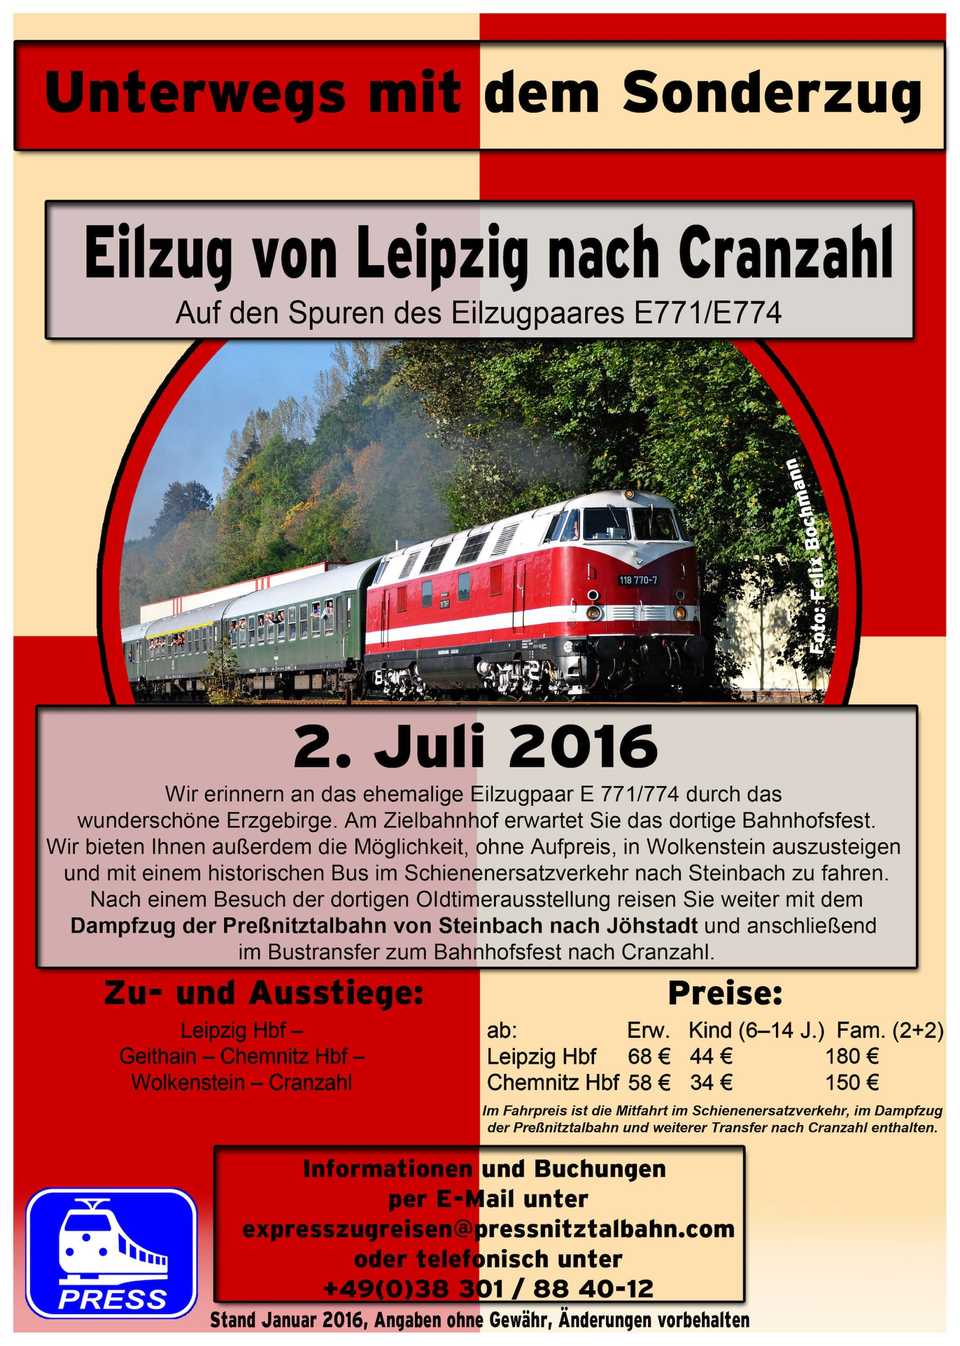 Veranstaltungsankündigung Eilzug von Leipzig nach Cranzahl am 2. Juli 2016.